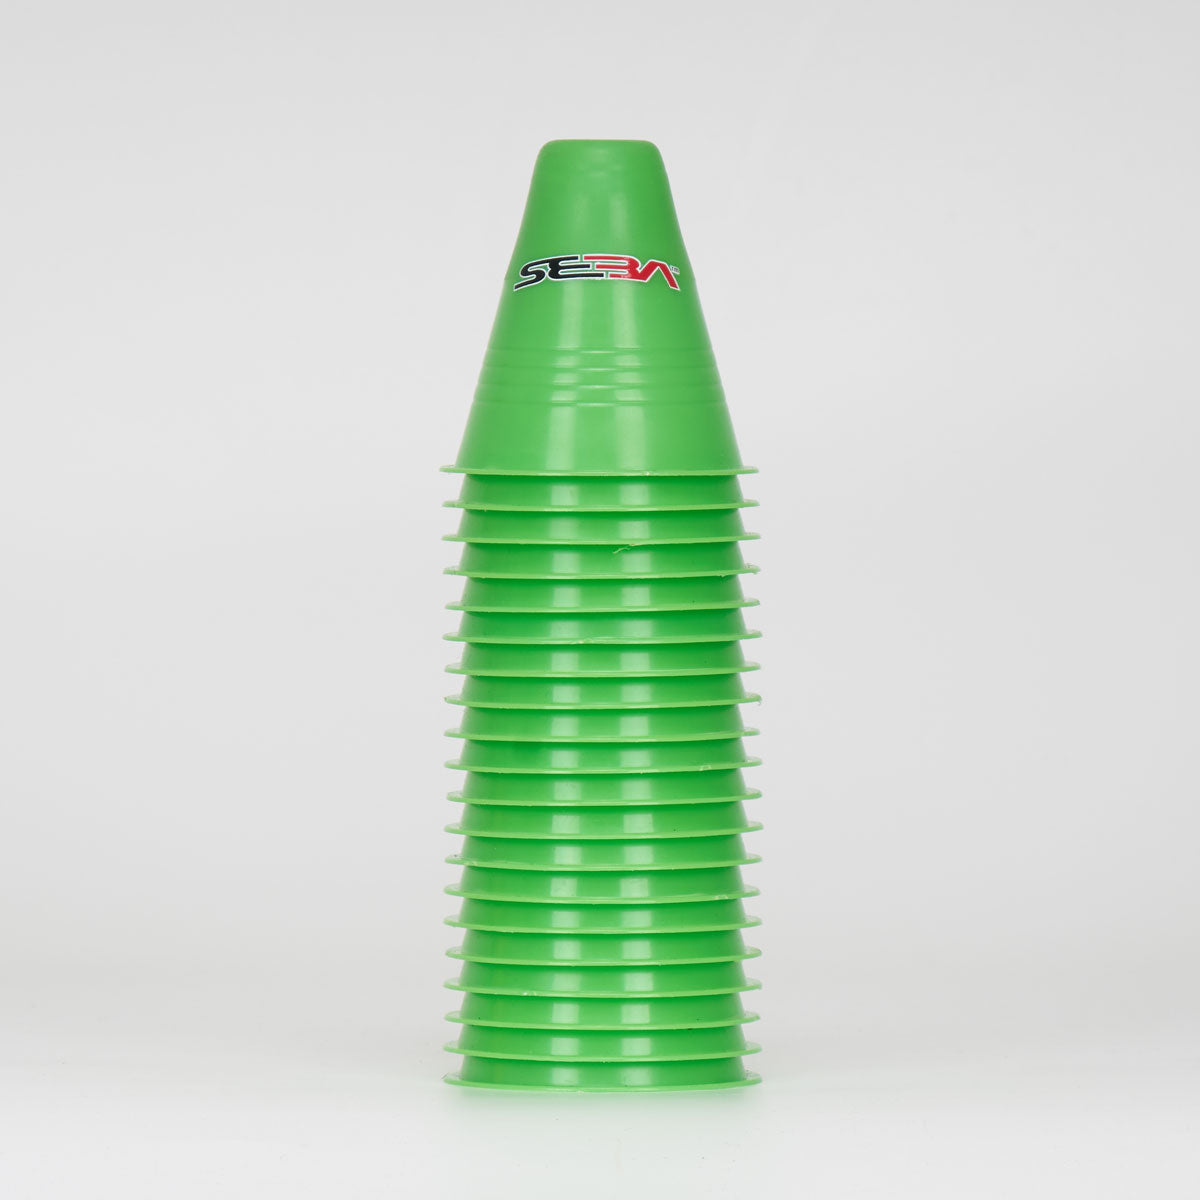 Seba Dual Density Cones - Green